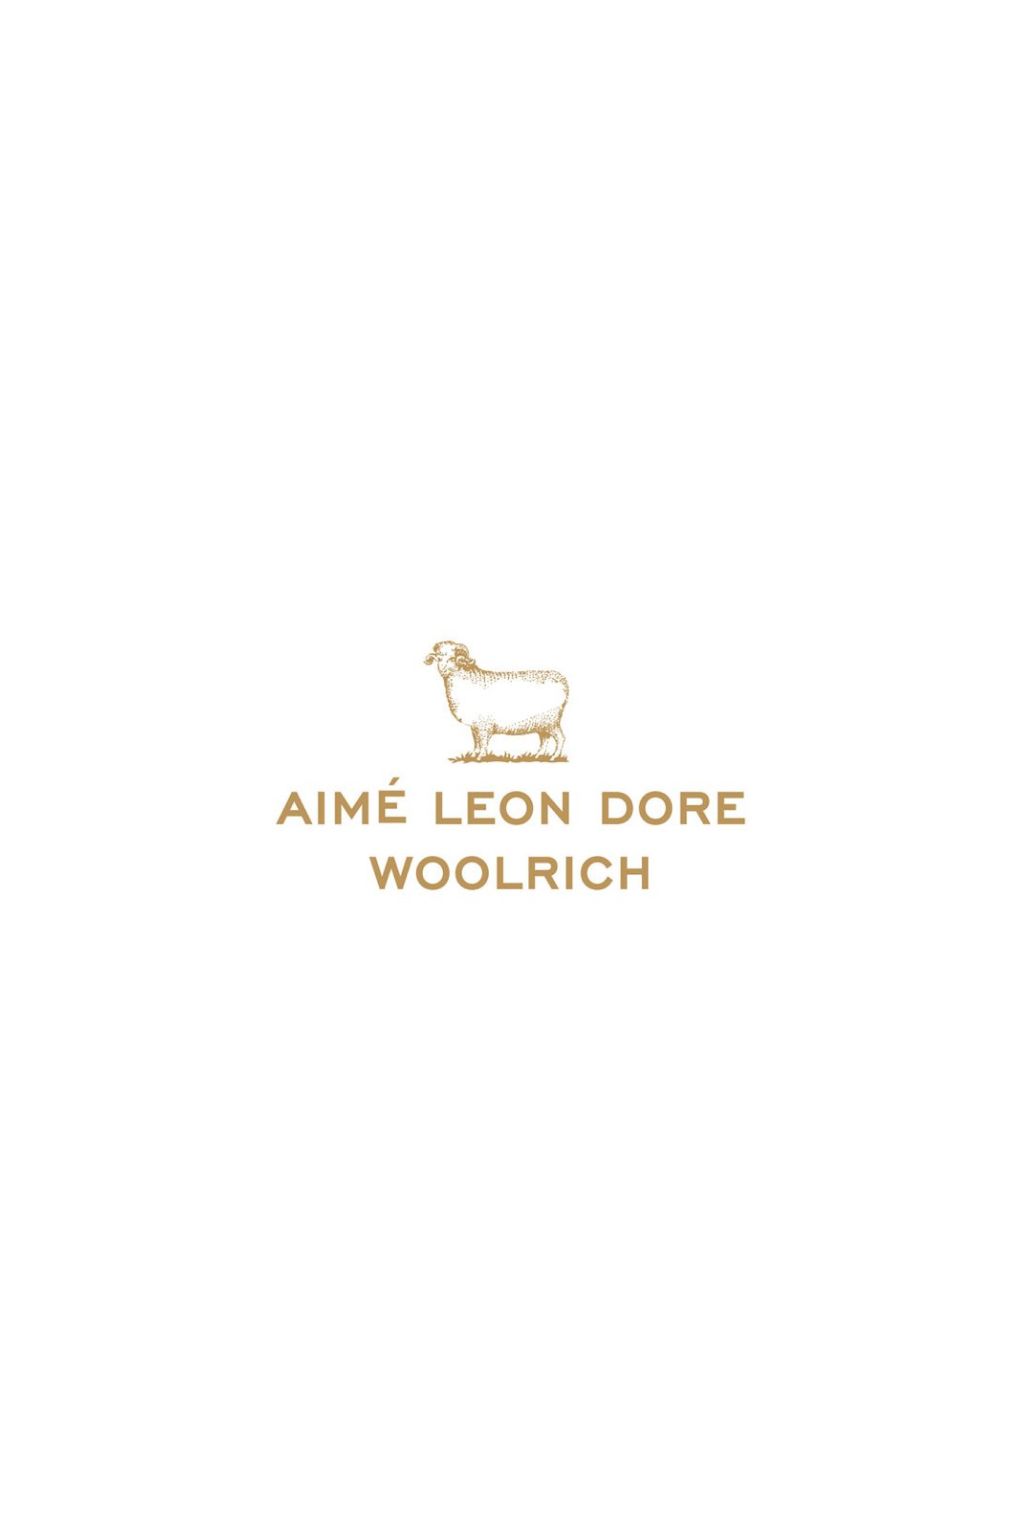 Aimé Leon Dore / Woolrich